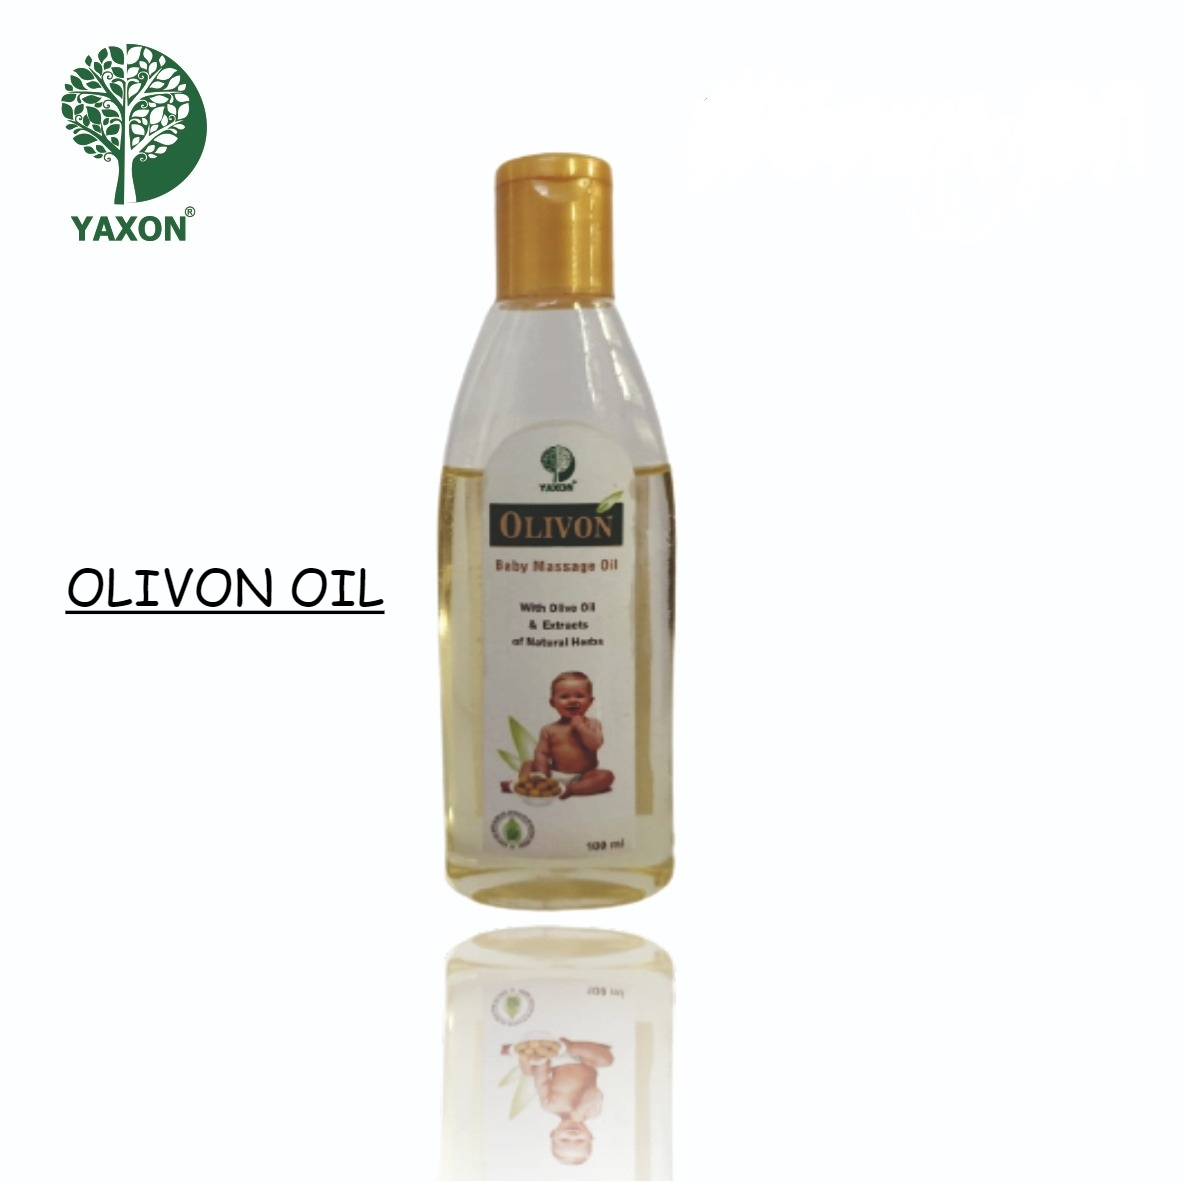 YAXON Olivon Oil 100ml